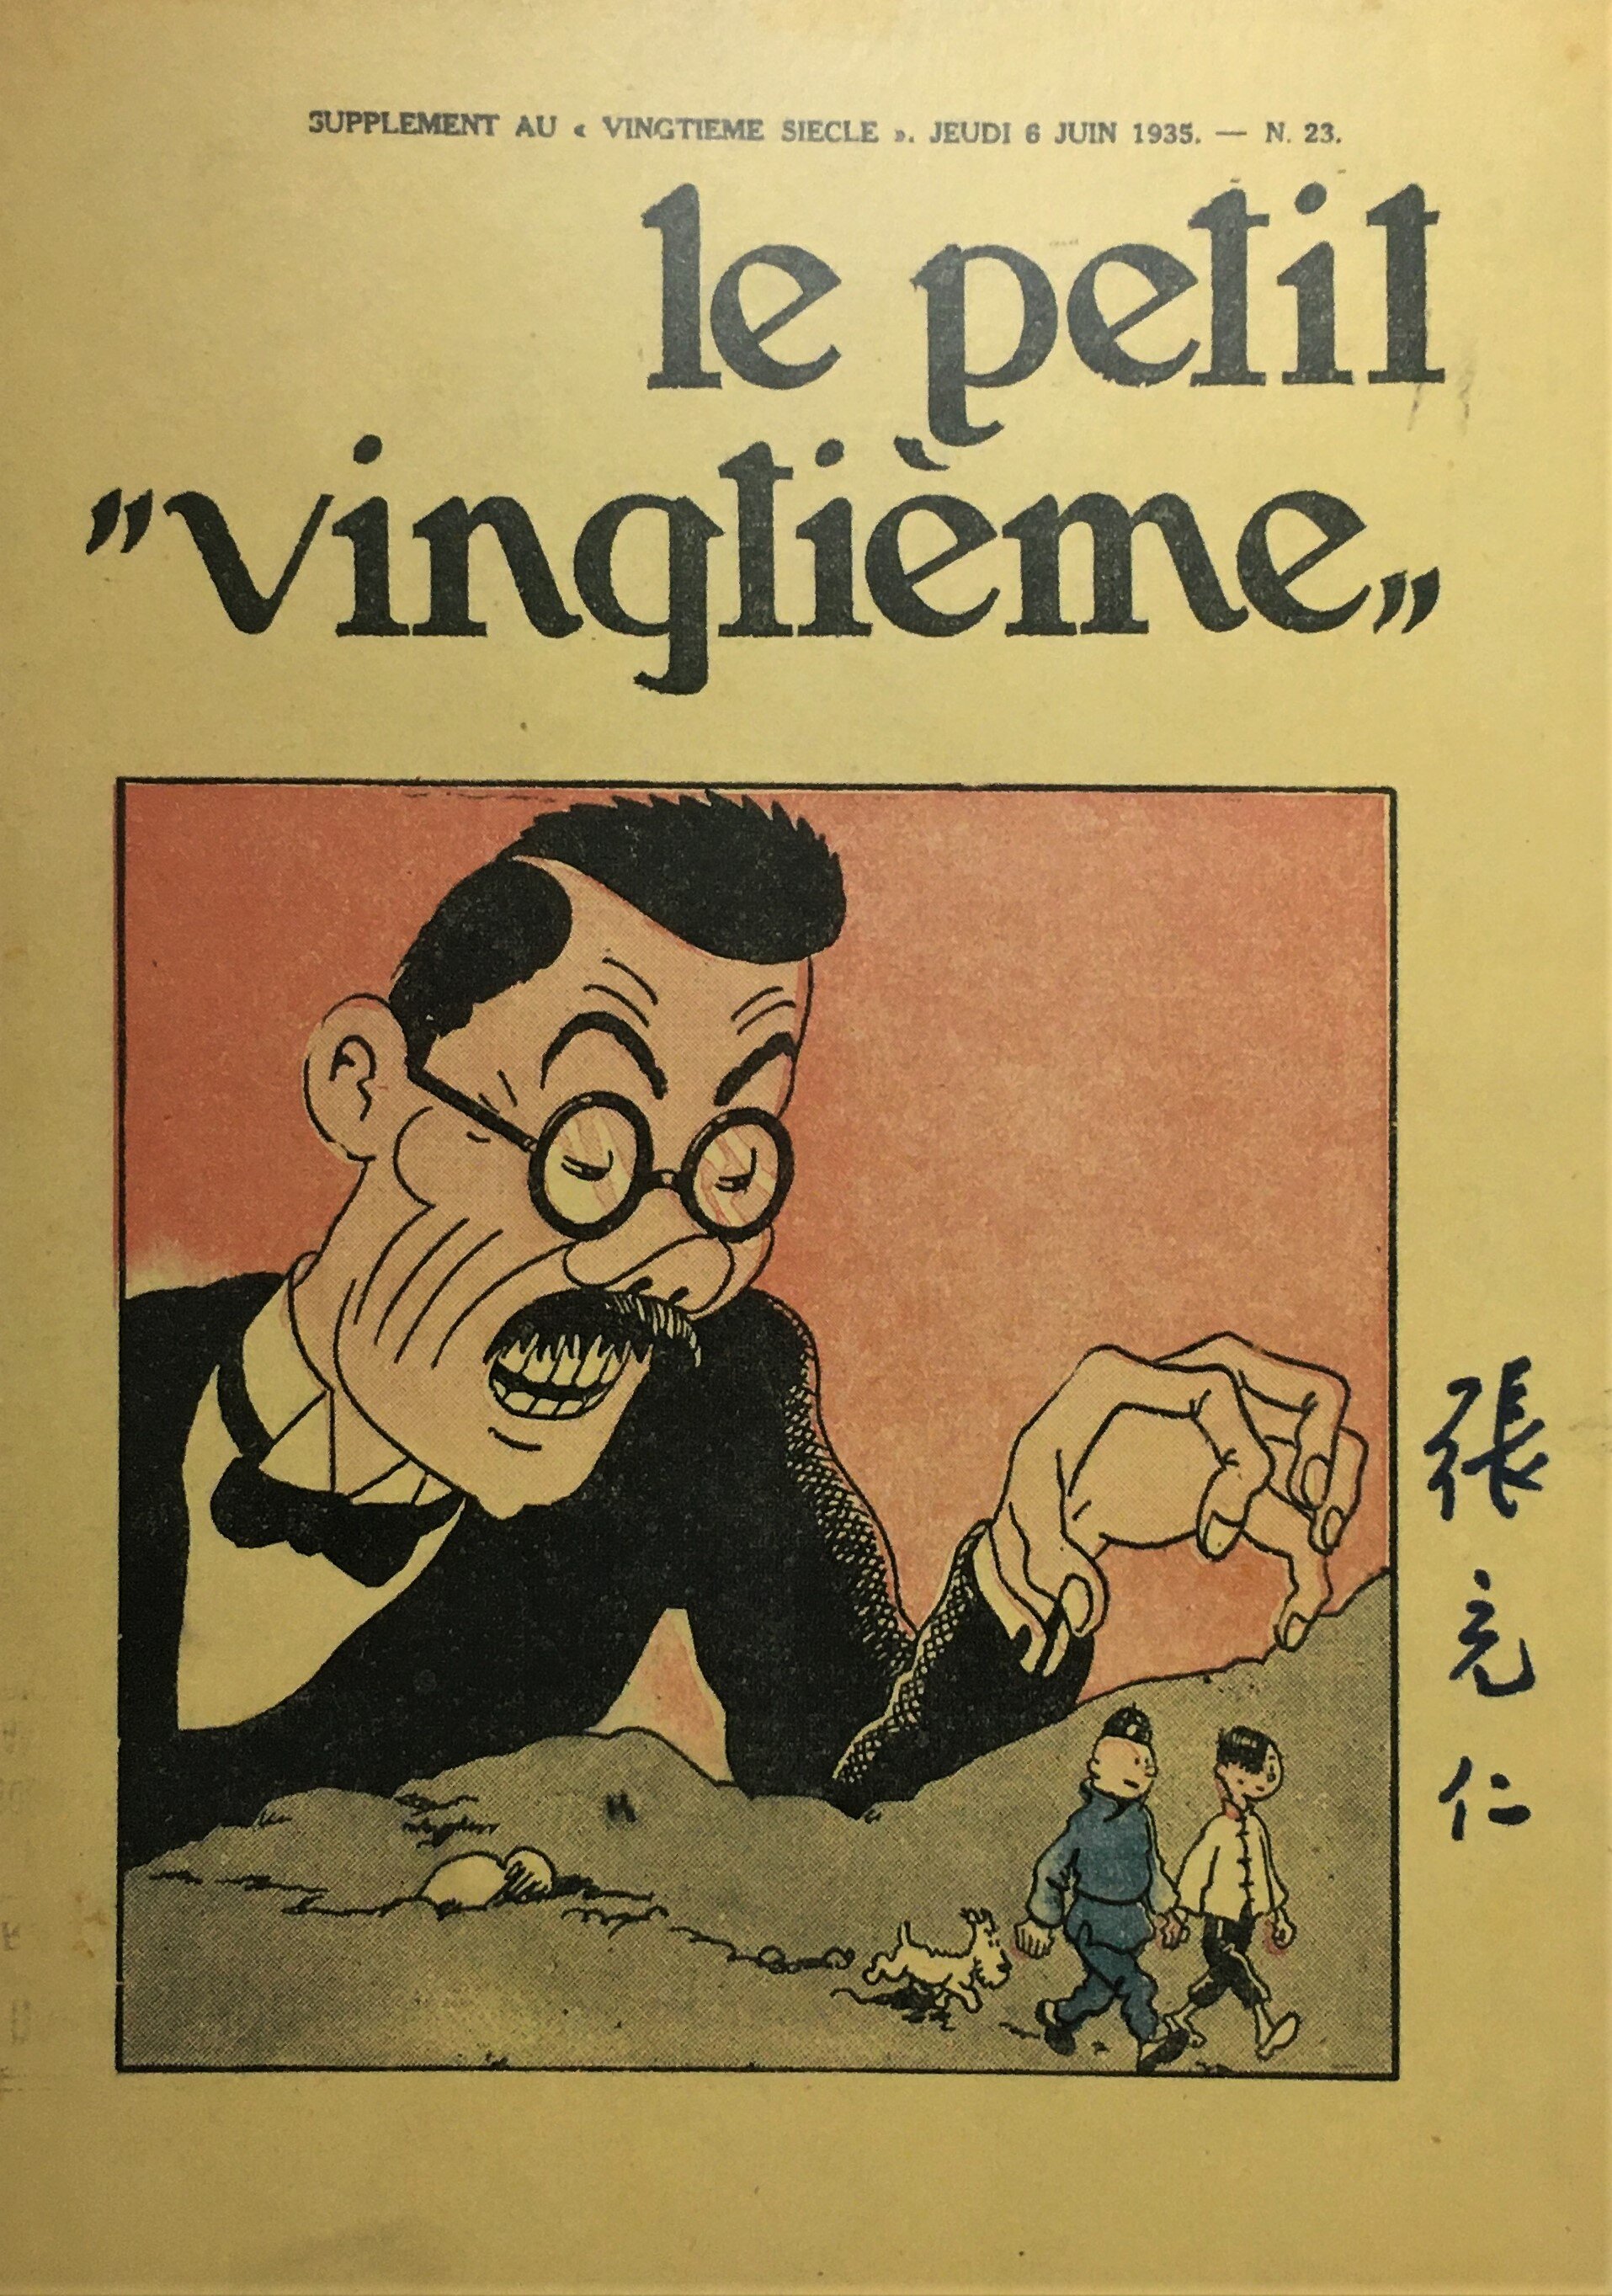  Cover of  Le Petit Vingtieme,  June 8 1935. 